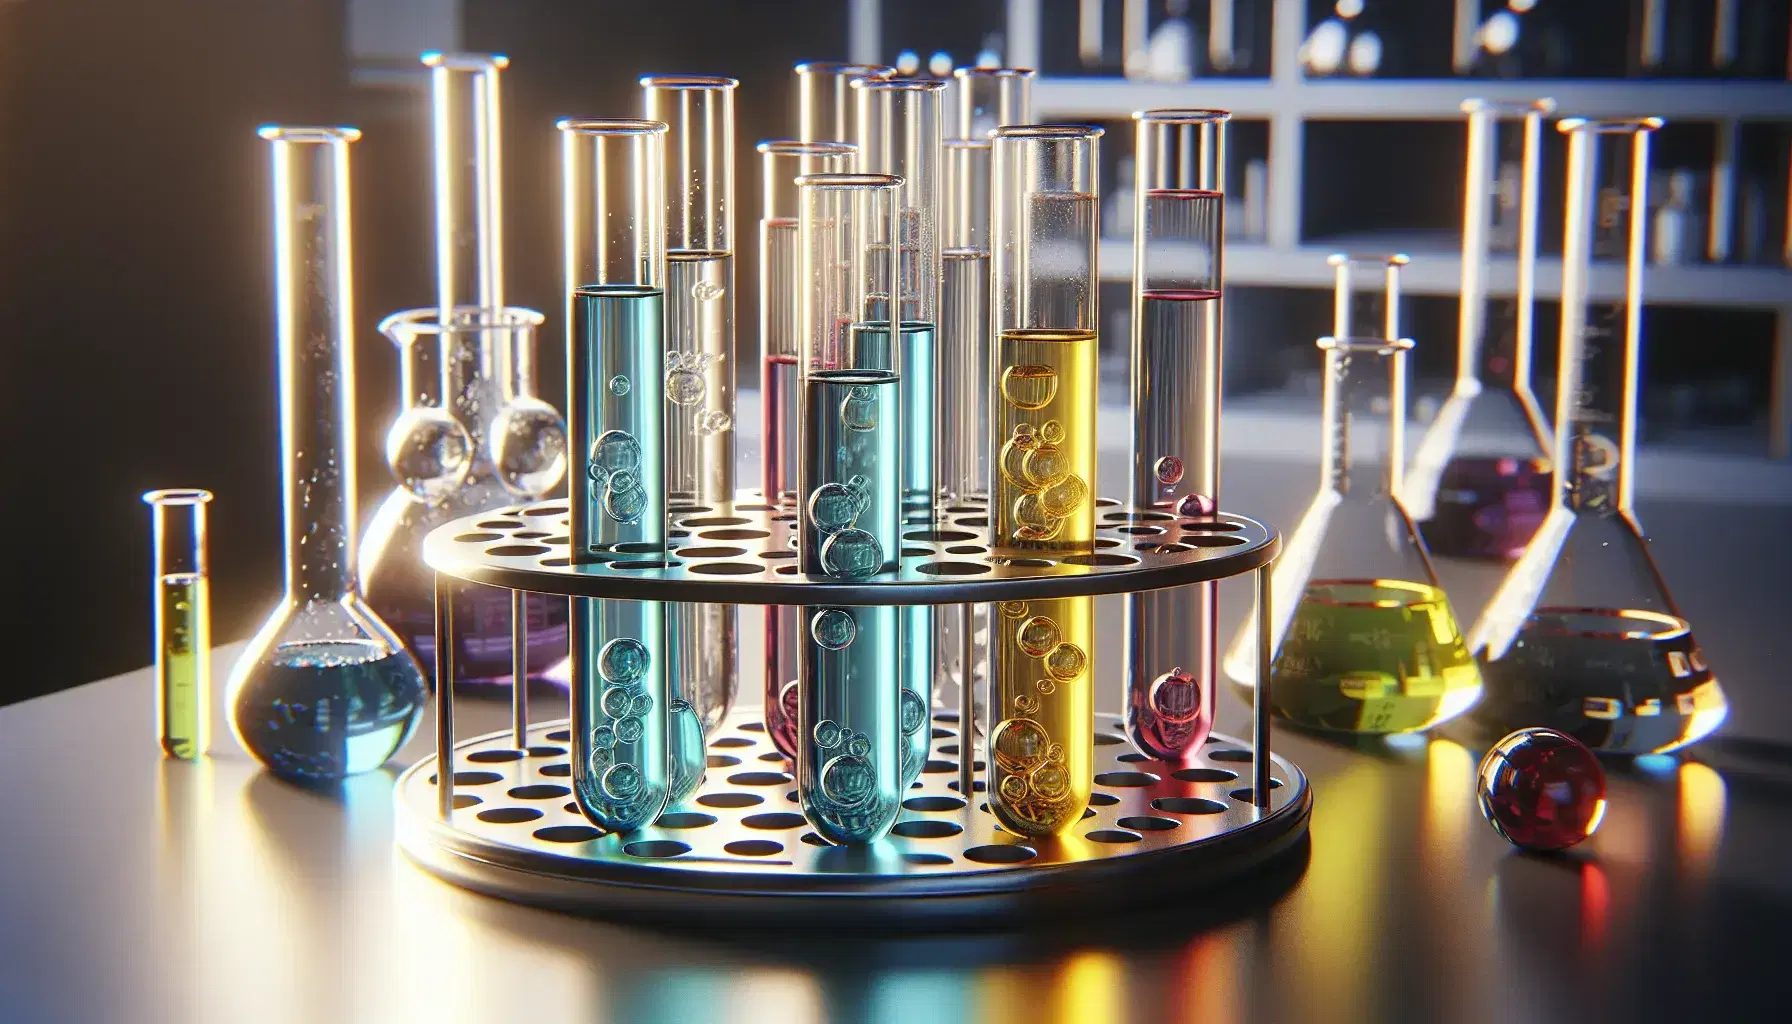 Primer plano de tubos de ensayo de vidrio con líquidos de colores azul claro, amarillo limón y rojo rubí en soporte metálico, en un laboratorio químico.